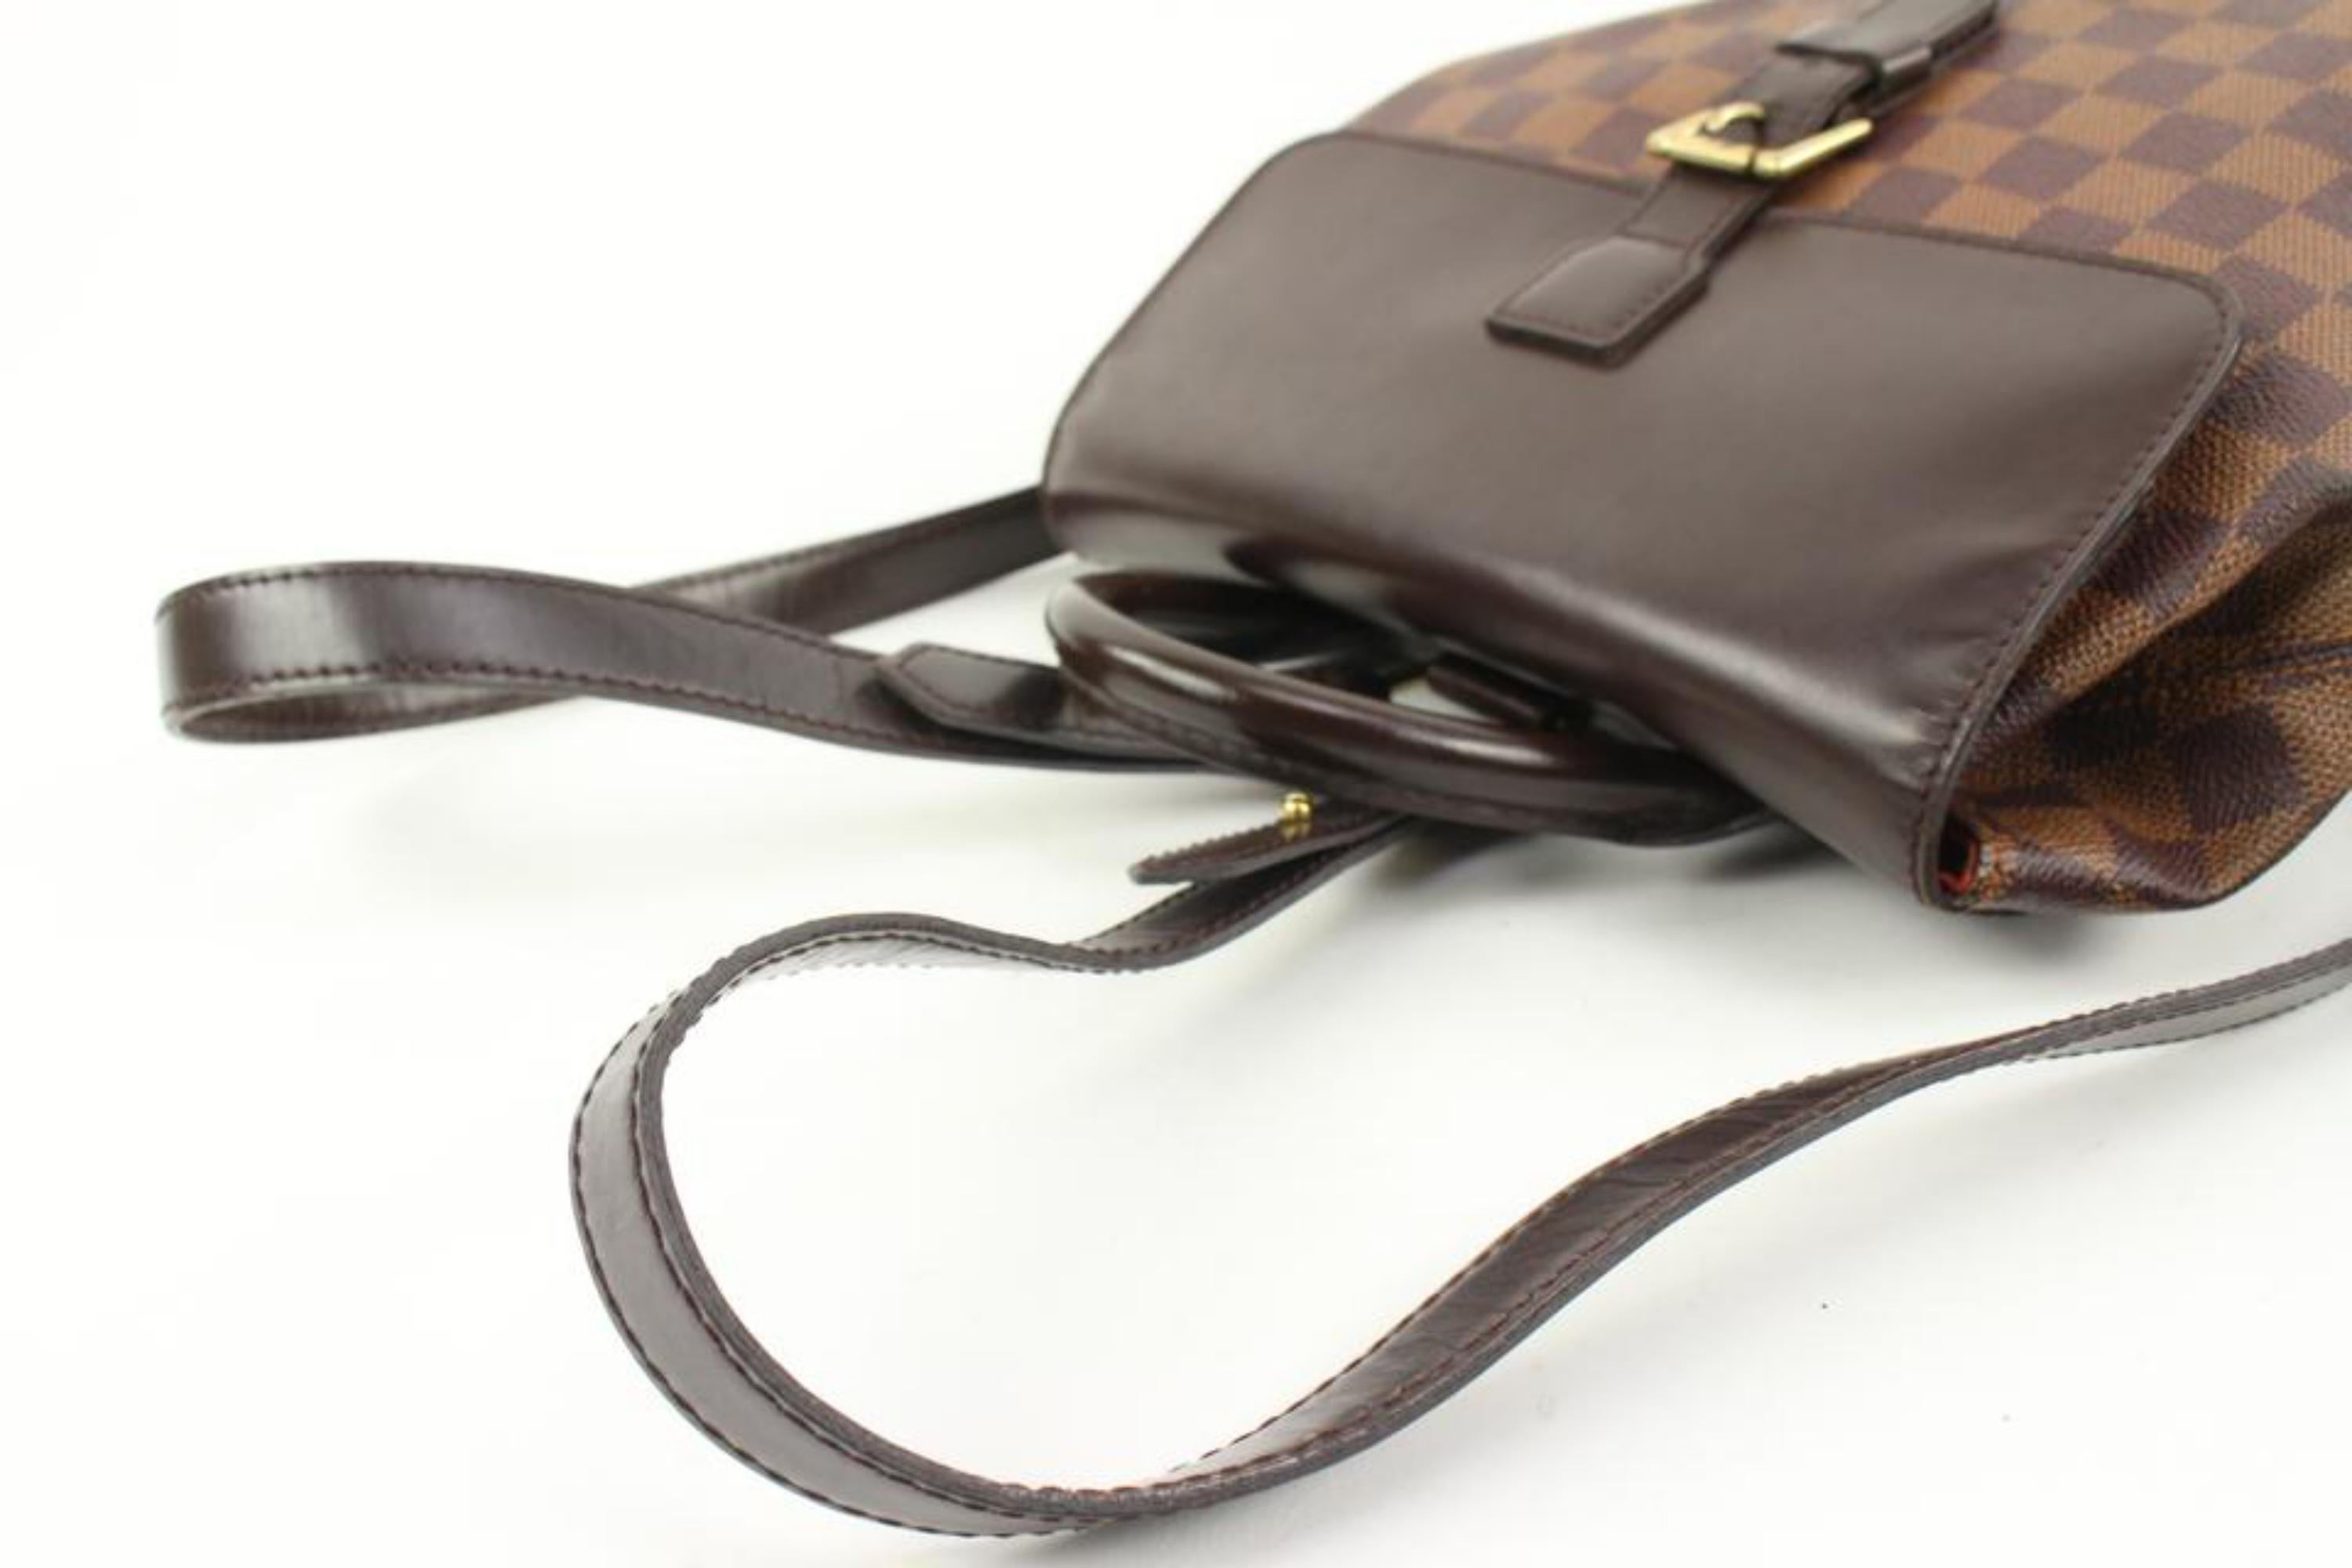 Gray Louis Vuitton Damier Ebene Soho Backpack s210lv61 For Sale